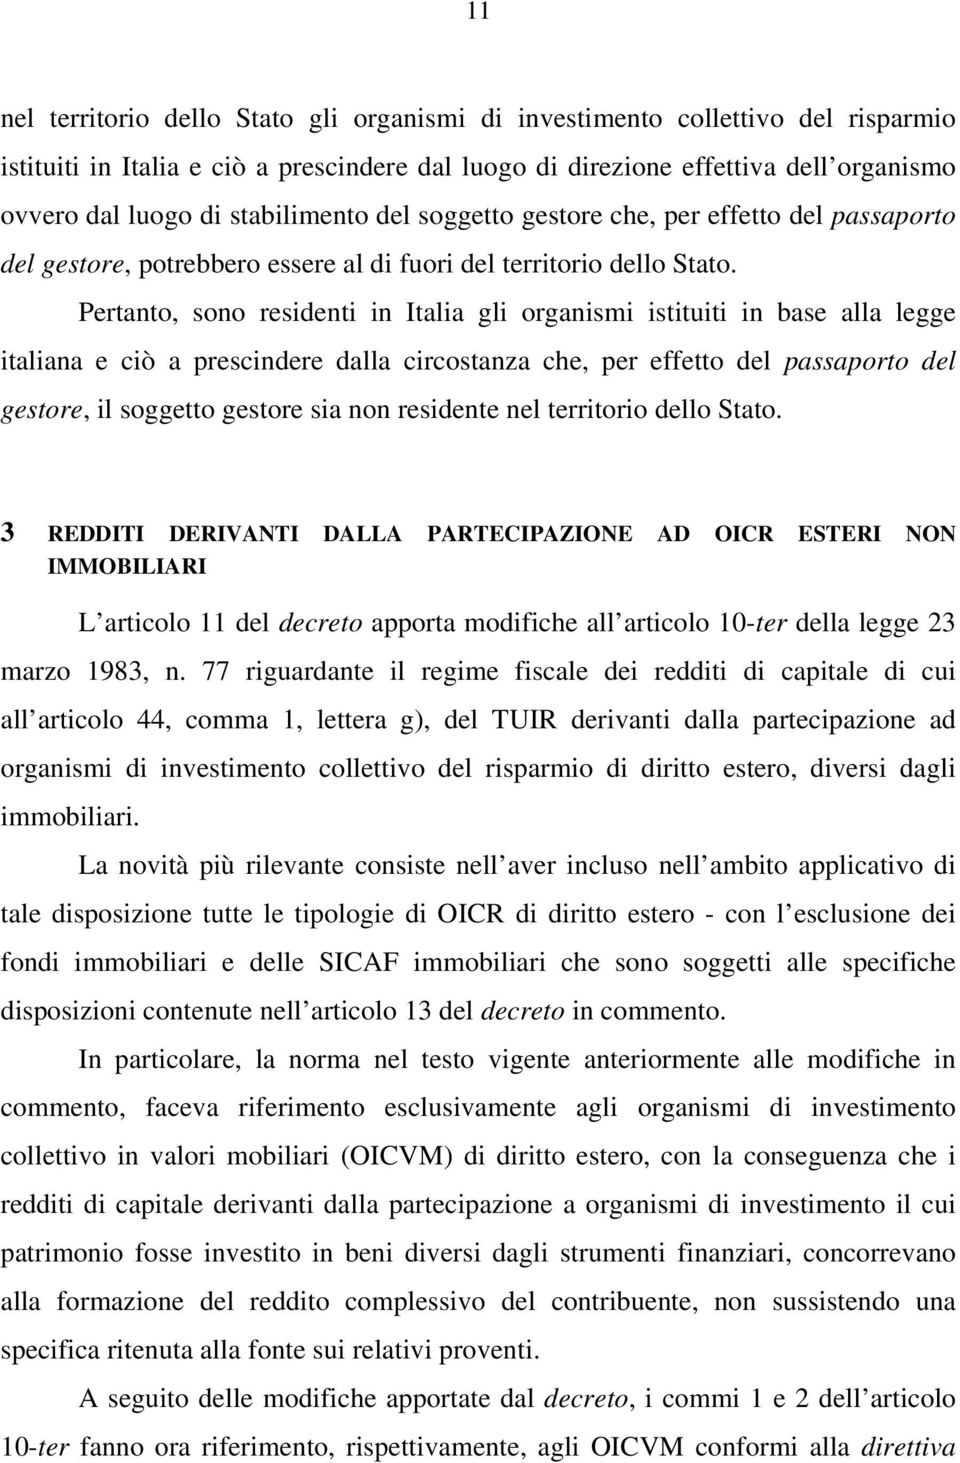 Pertanto, sono residenti in Italia gli organismi istituiti in base alla legge italiana e ciò a prescindere dalla circostanza che, per effetto del passaporto del gestore, il soggetto gestore sia non